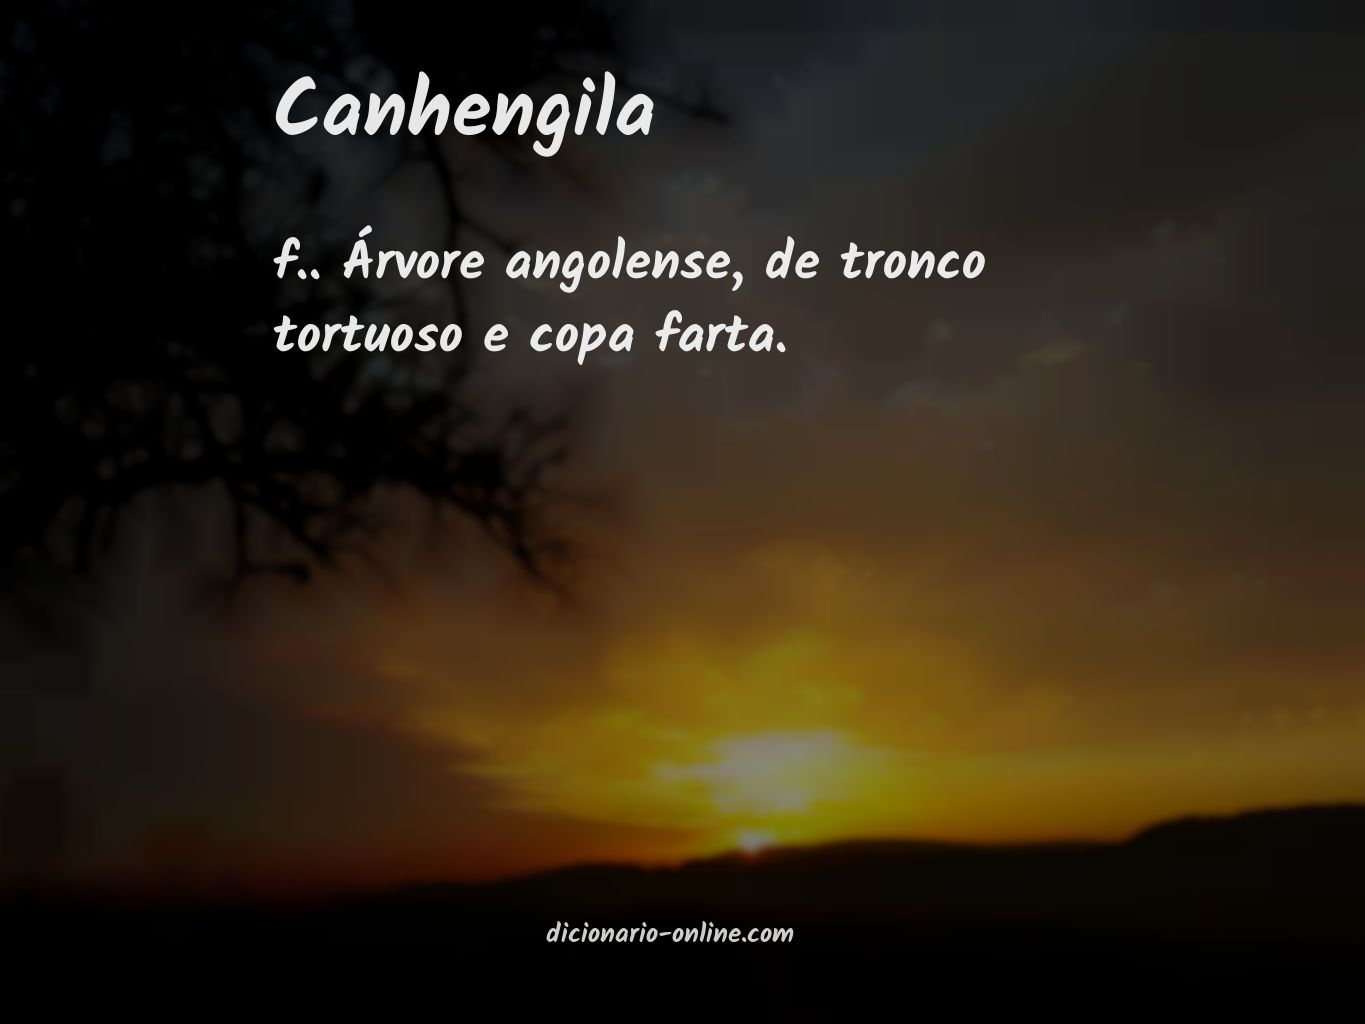 Significado de canhengila